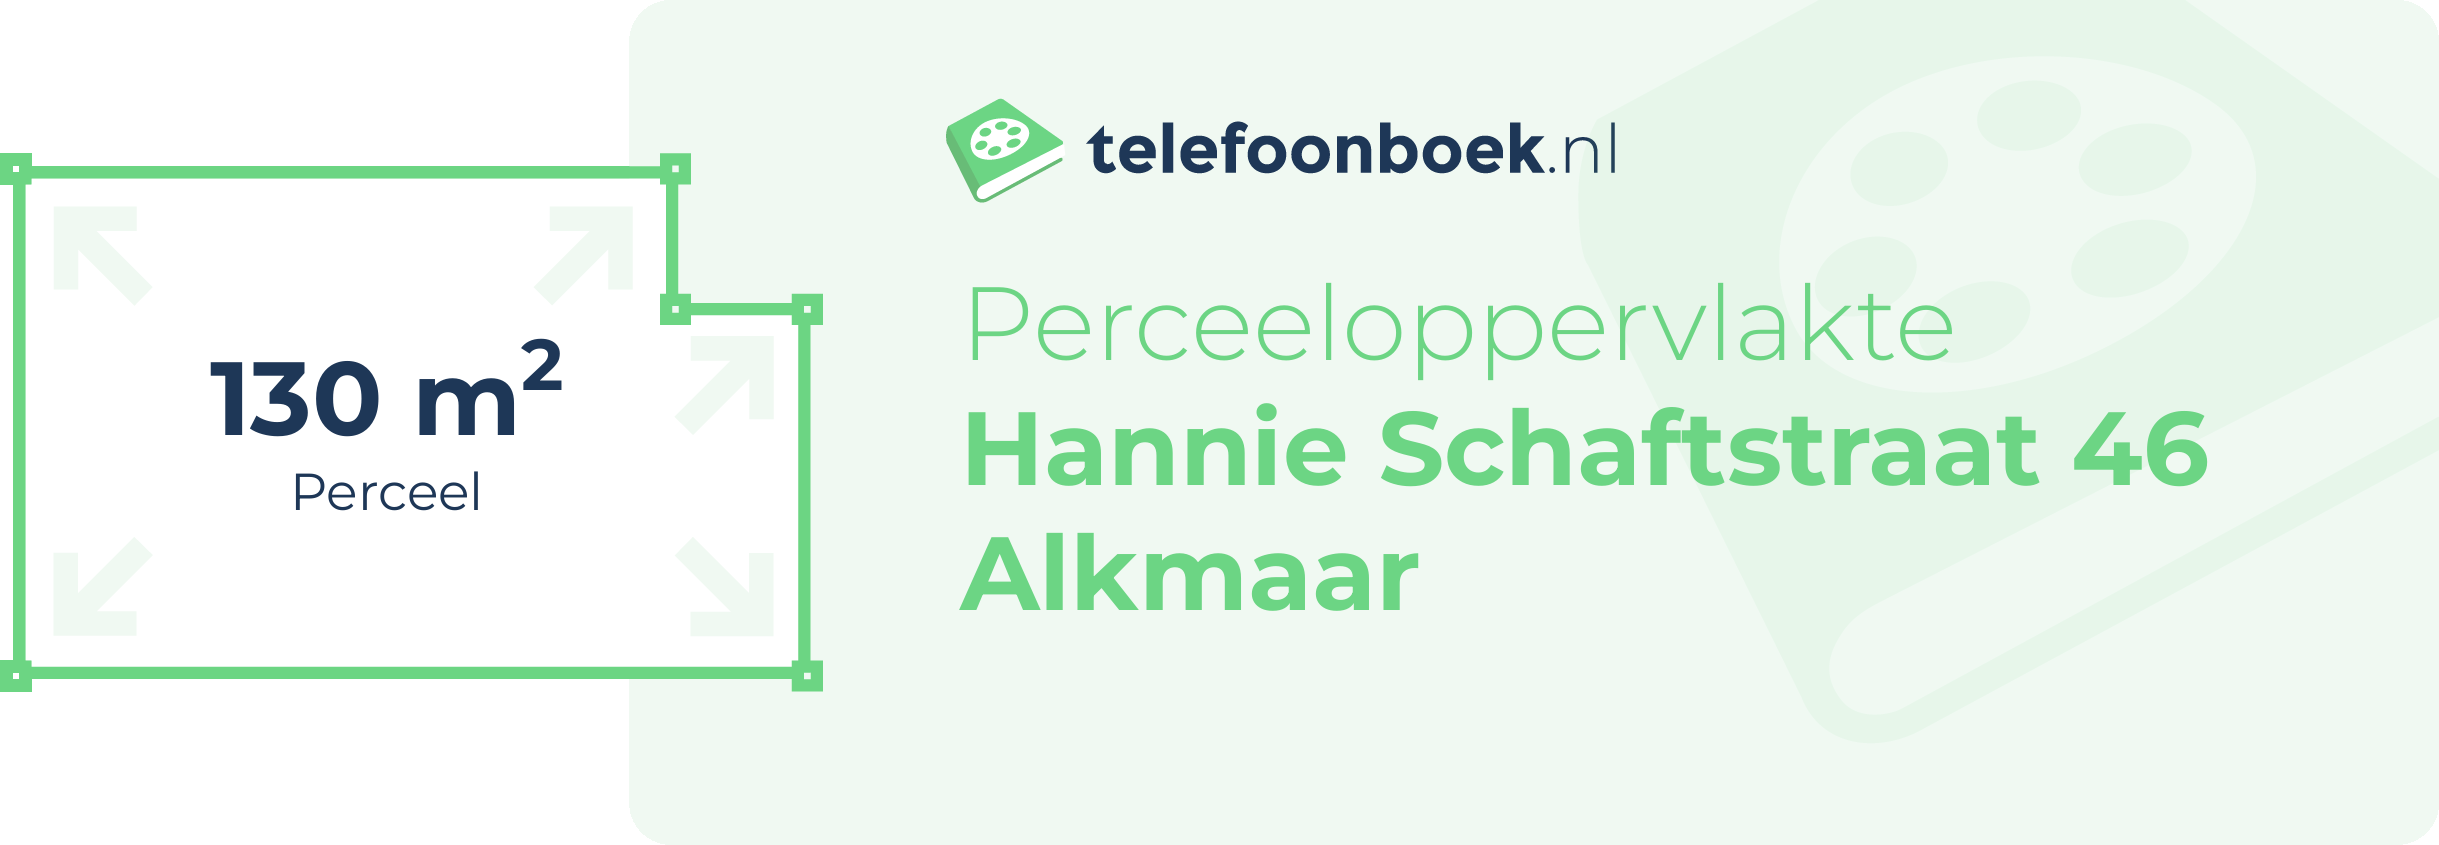 Perceeloppervlakte Hannie Schaftstraat 46 Alkmaar